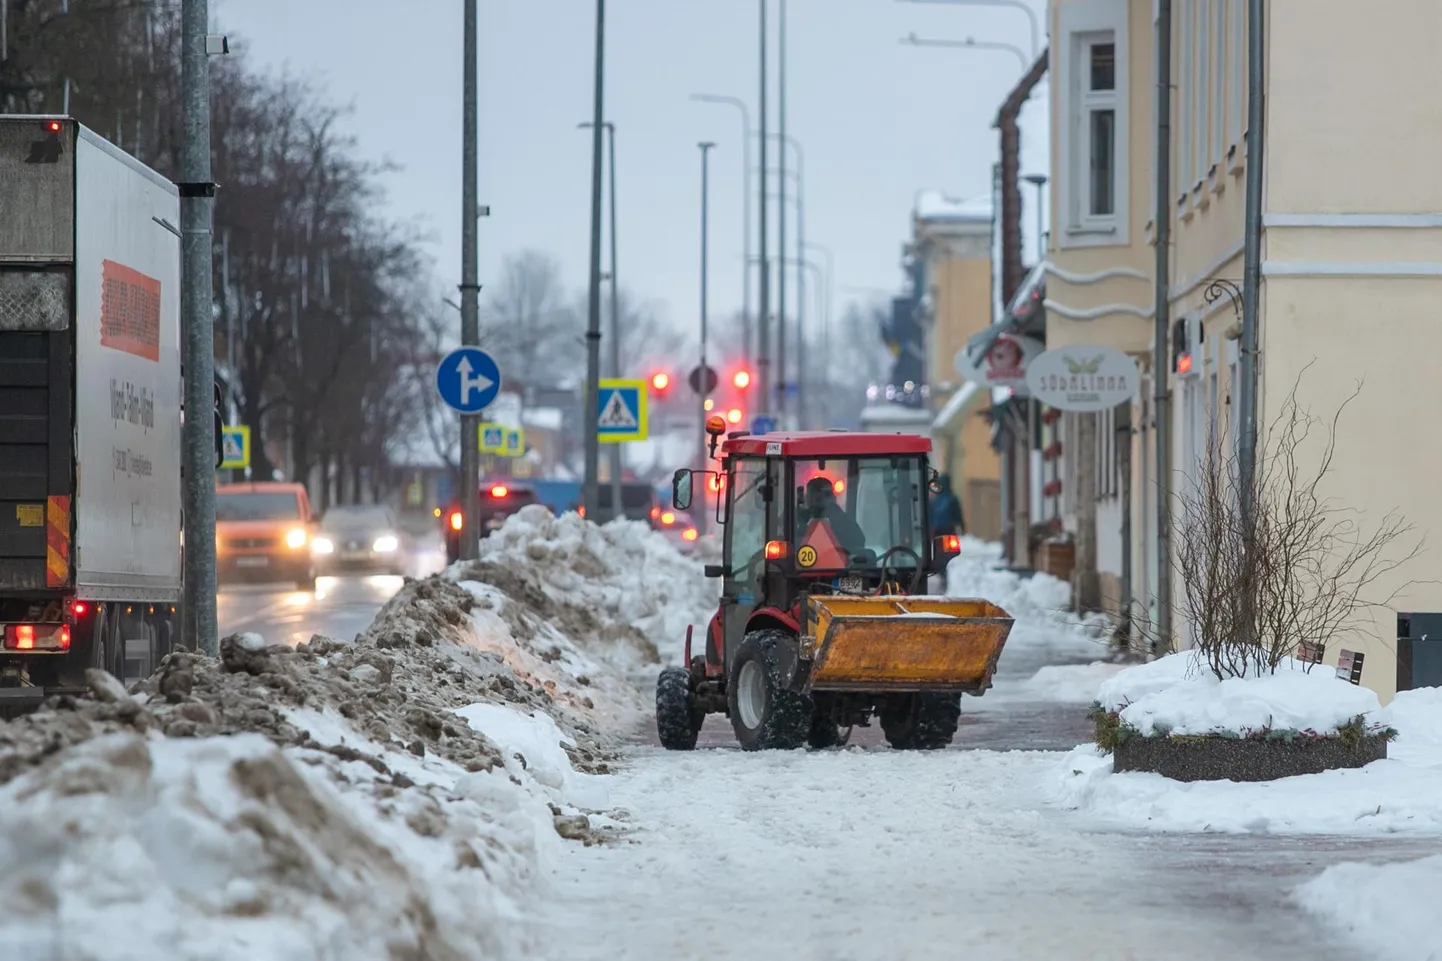 Kui eelmisel talvel põhjustasid töötajate nappus ja erakordselt suur hulk lund teede hooldamises tõrkeid, siis uus talv on seni rahulikult möödunud.